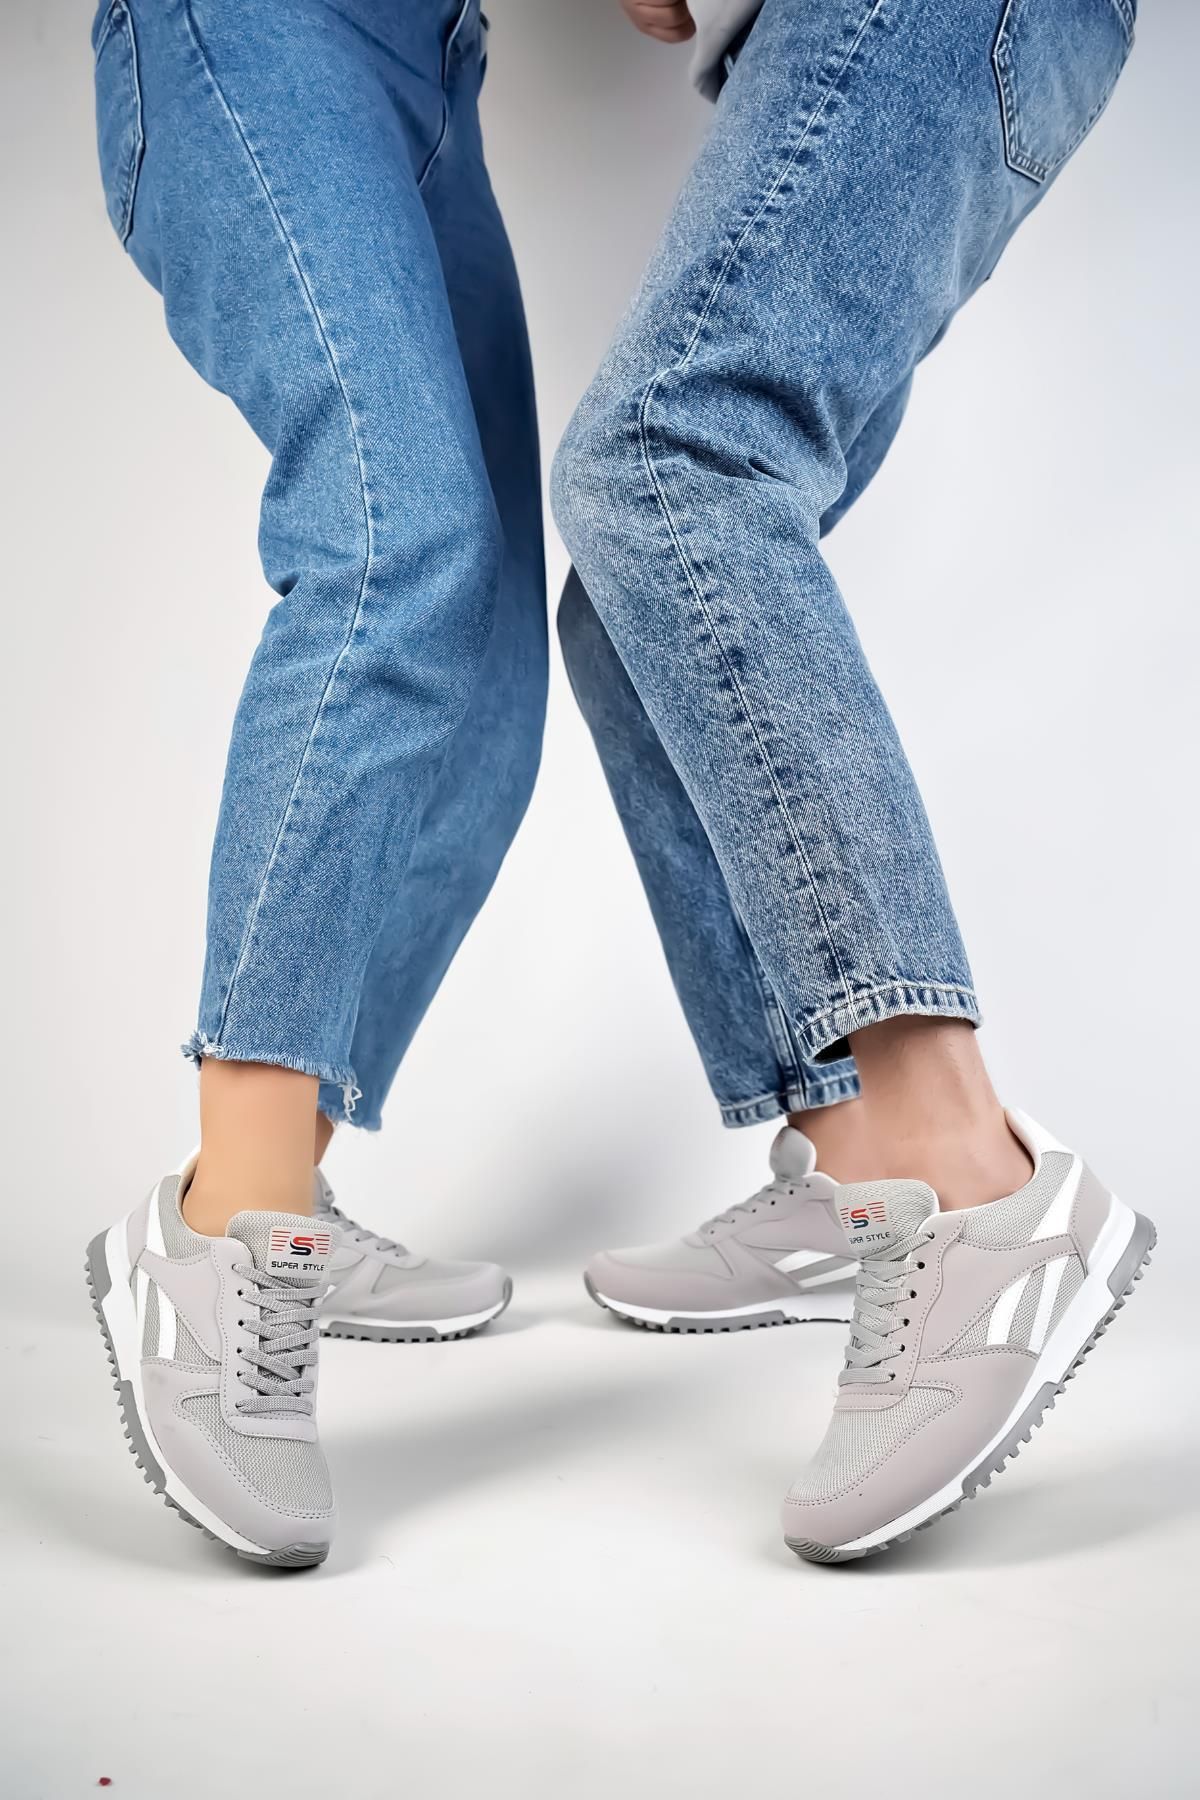 Muggo Elvis Unisex Ortopedik Günlük Garantili Yürüyüş Koşu Sneaker Spor Ayakkabı